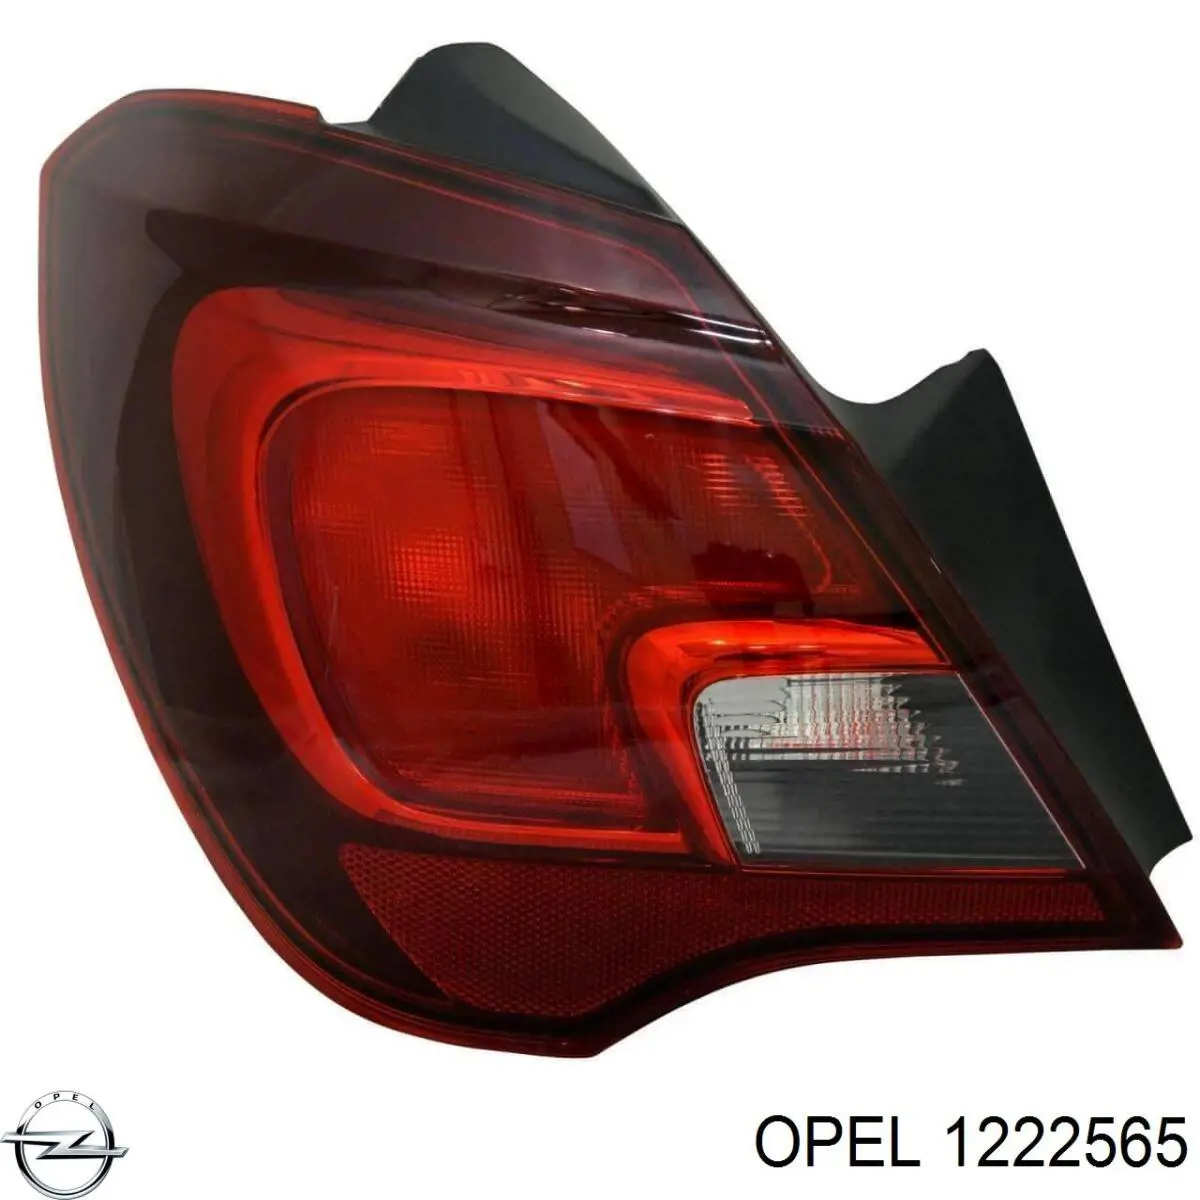 1222565 Opel lanterna traseira esquerda externa